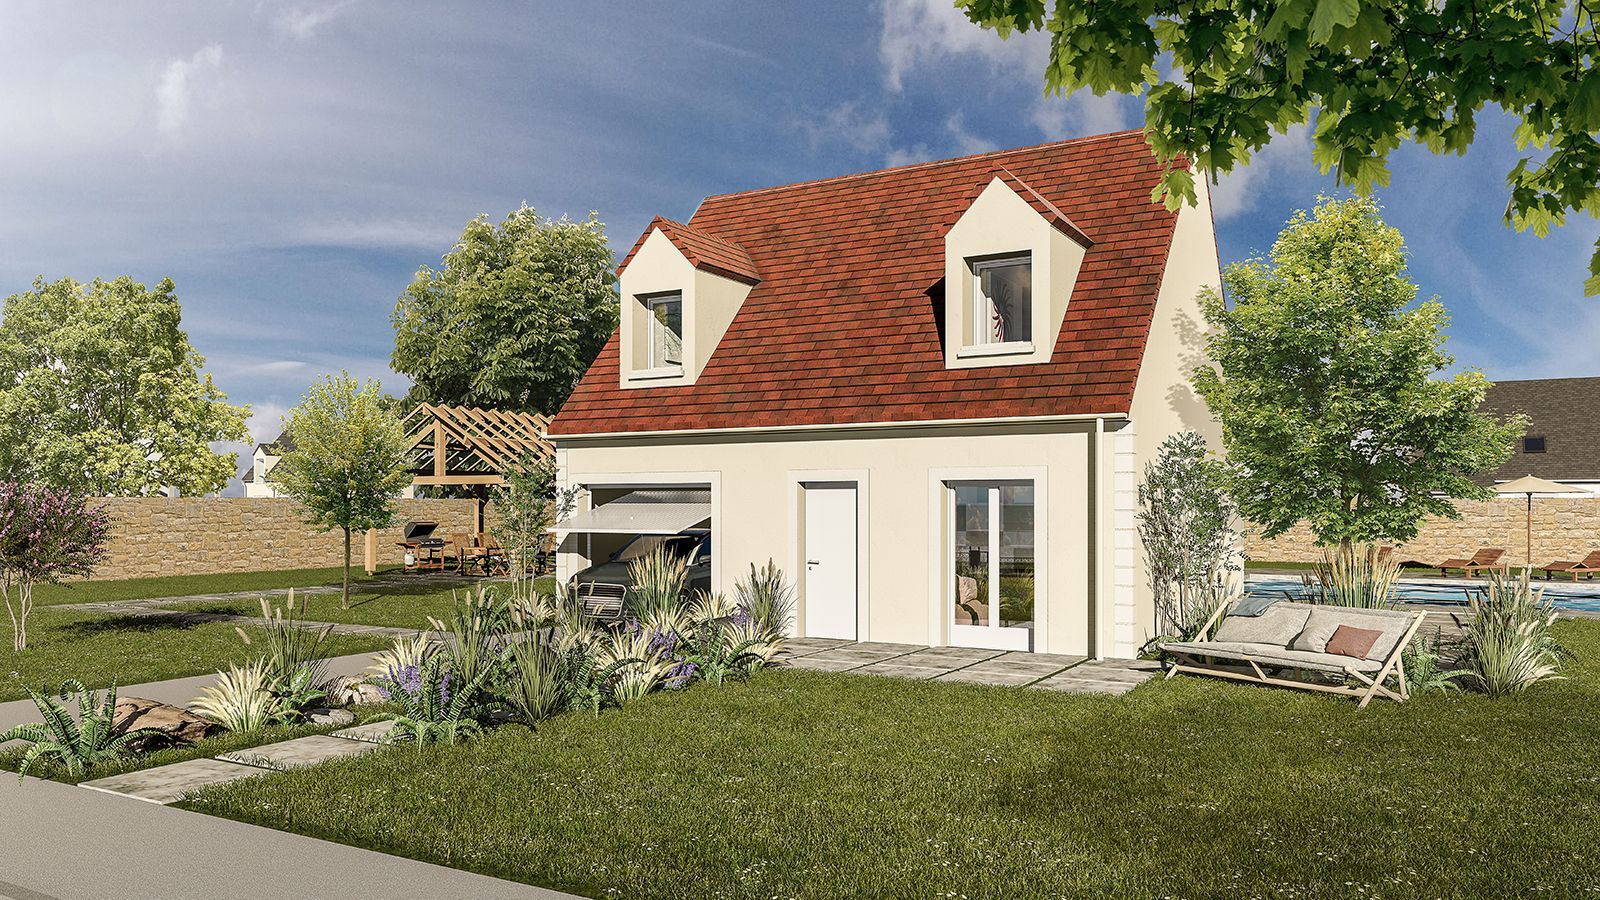 Vente Maison neuve 81 m² à Mantes-la-Jolie 240 494 €